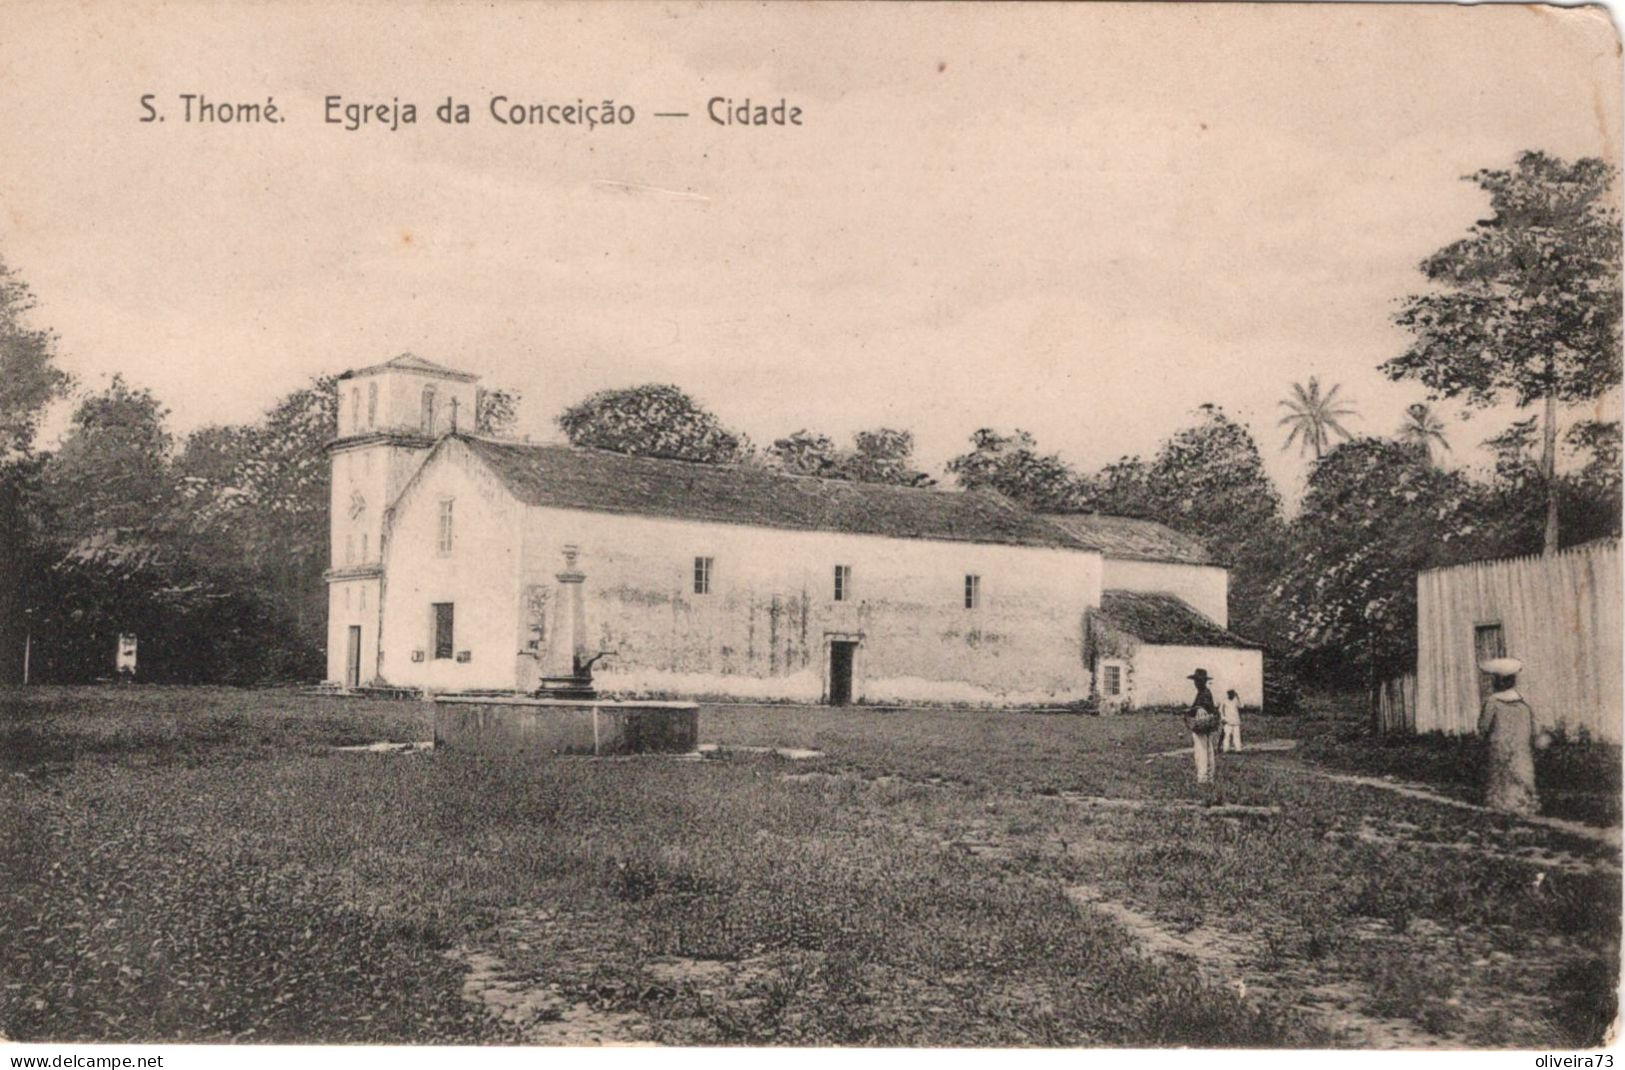 SÃO TOME E PRINCIPE - S. THOMÉ - Igreja Da Conceição - Cidade - Sao Tomé E Principe